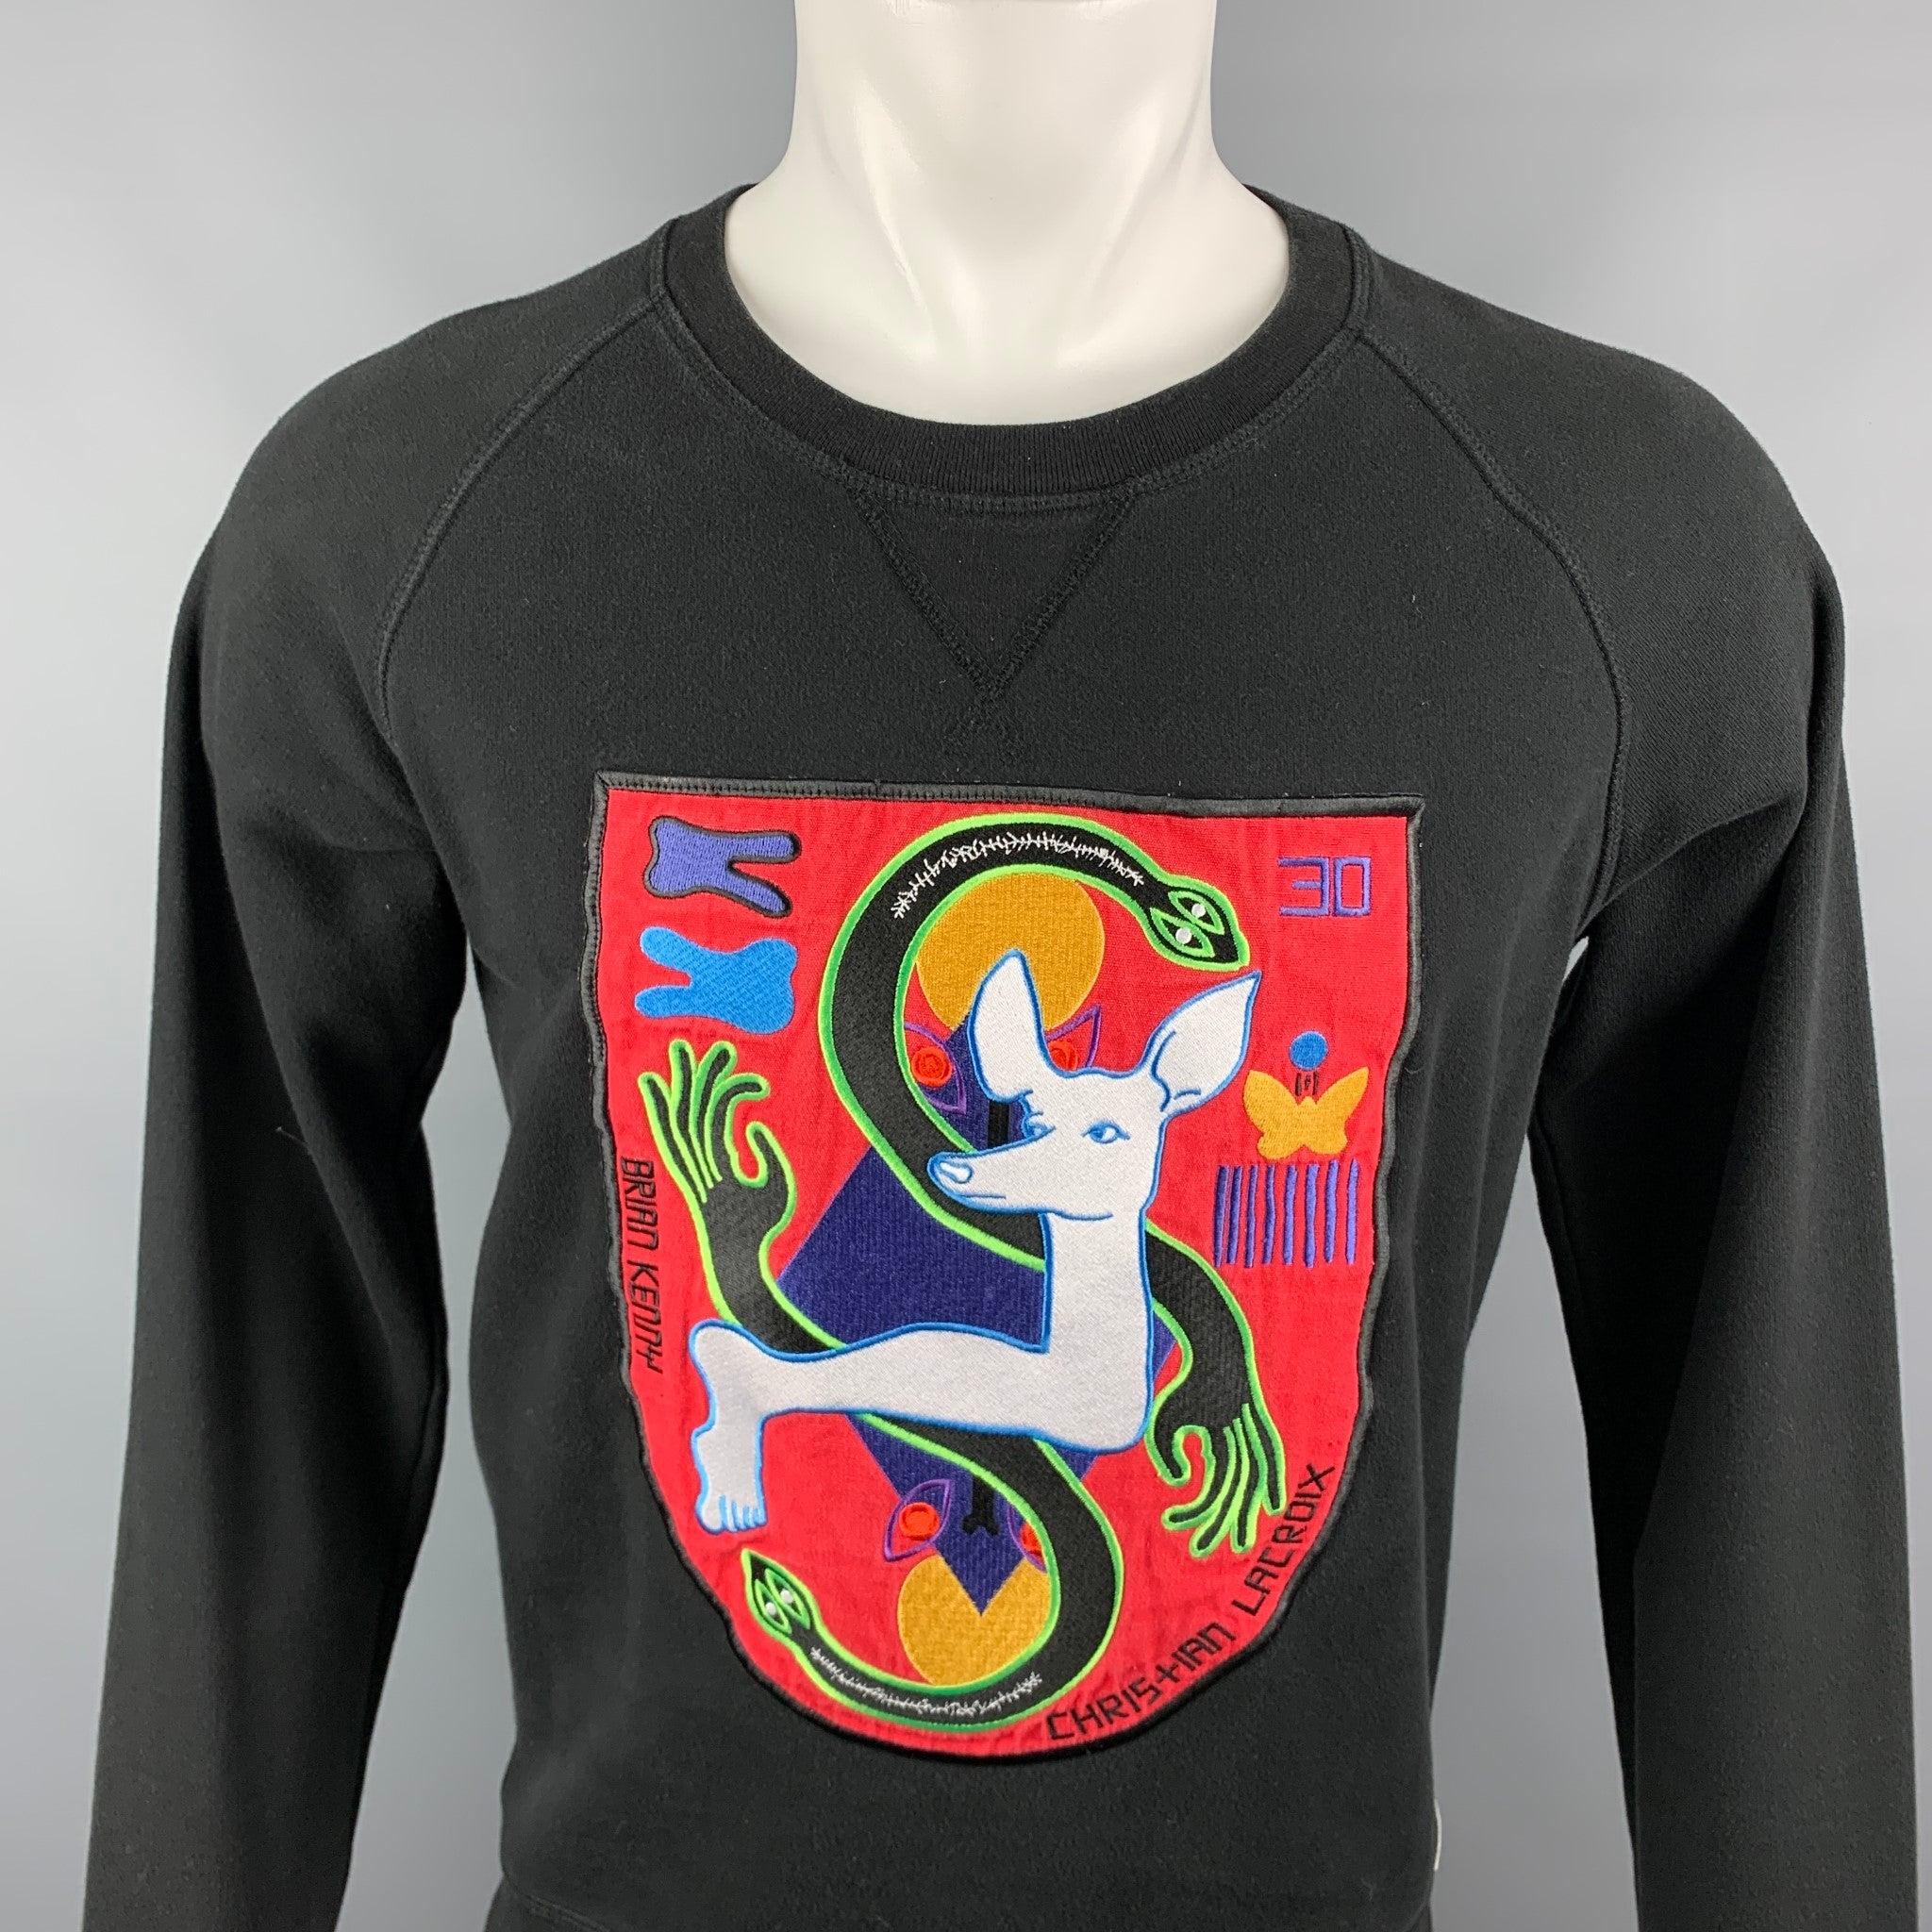 CHRISTIAN LACROIX x BRIAN KENNY Limited Edition Sweatshirt aus schwarz-roter abstrakter Baumwolle mit großem Patch und Rundhalsausschnitt. Guter Pre-Owned Zustand. 

Markiert:   S 

Abmessungen: 
 
Schultern: 17 Zoll  Brustumfang: 41 Zoll  Ärmel: